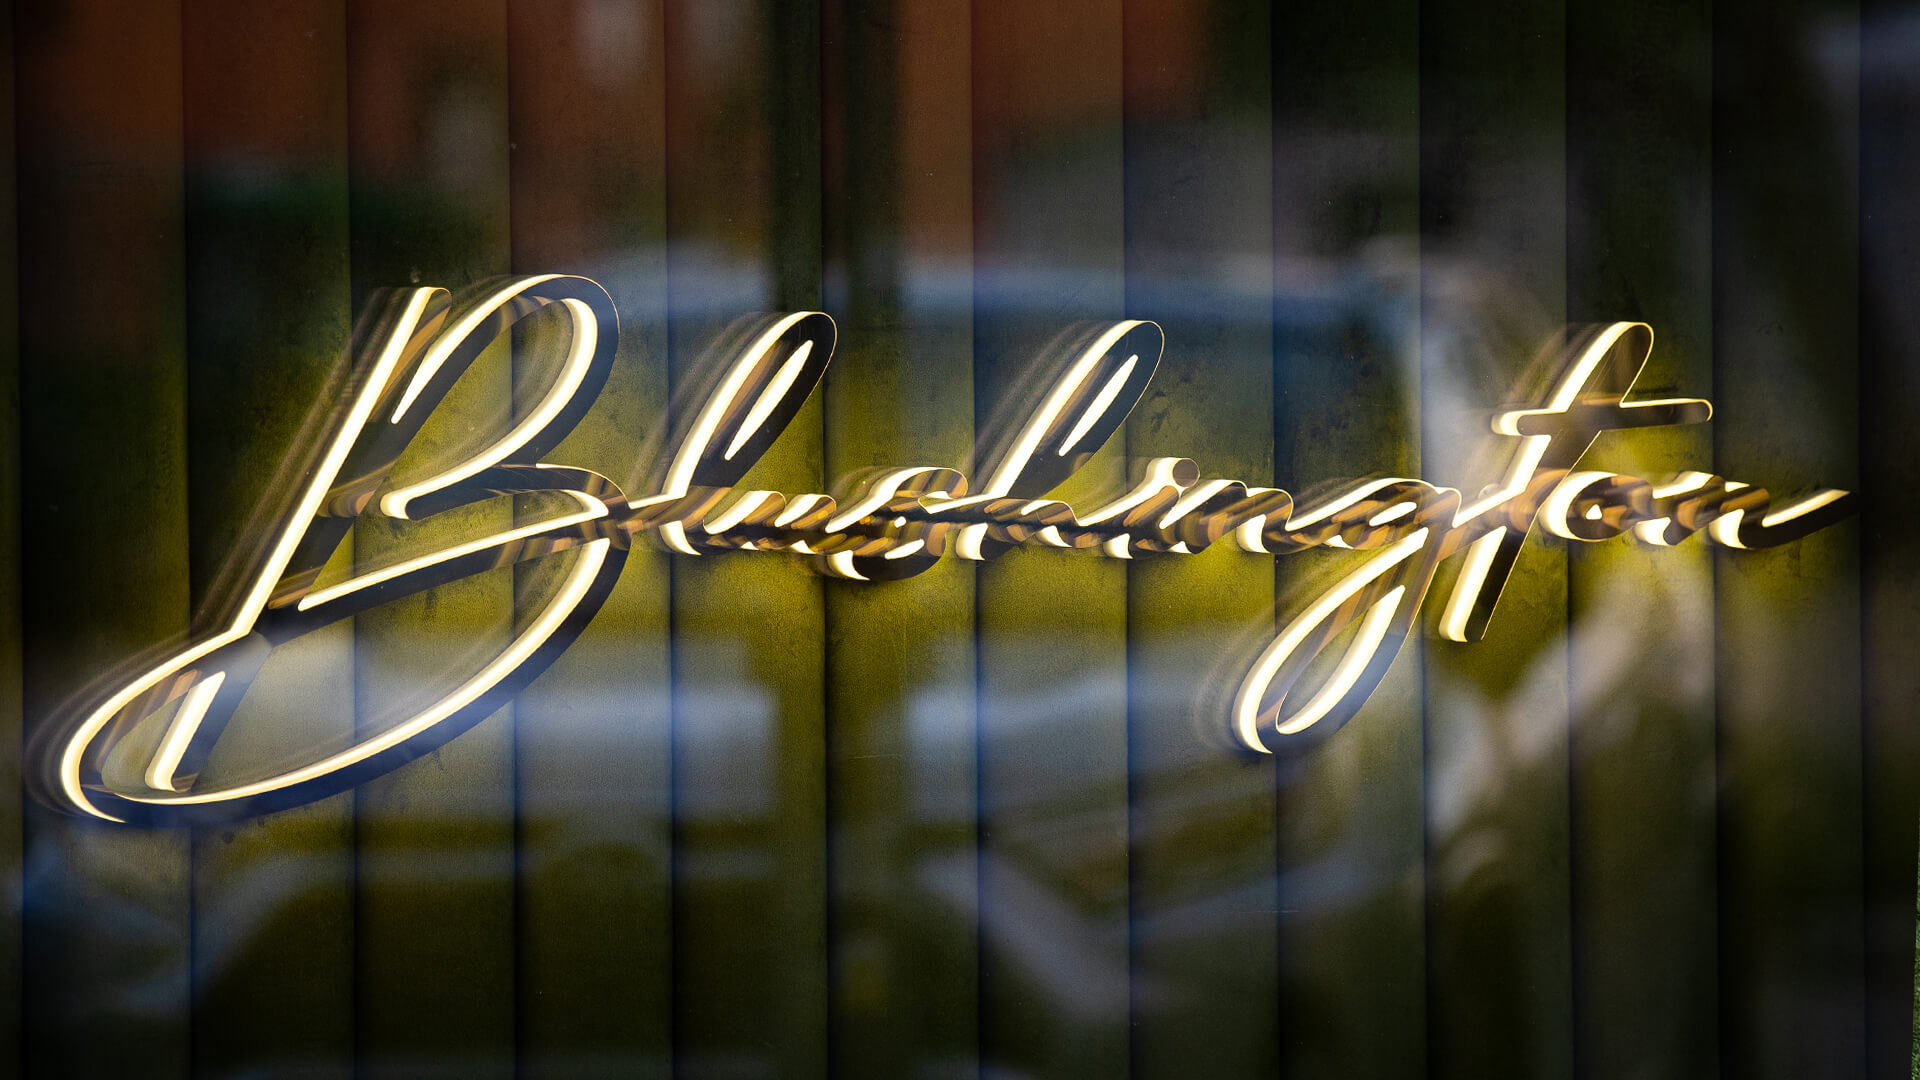 Blushington - Blushington seitlich beleuchtete LED-Buchstaben, in Gold.